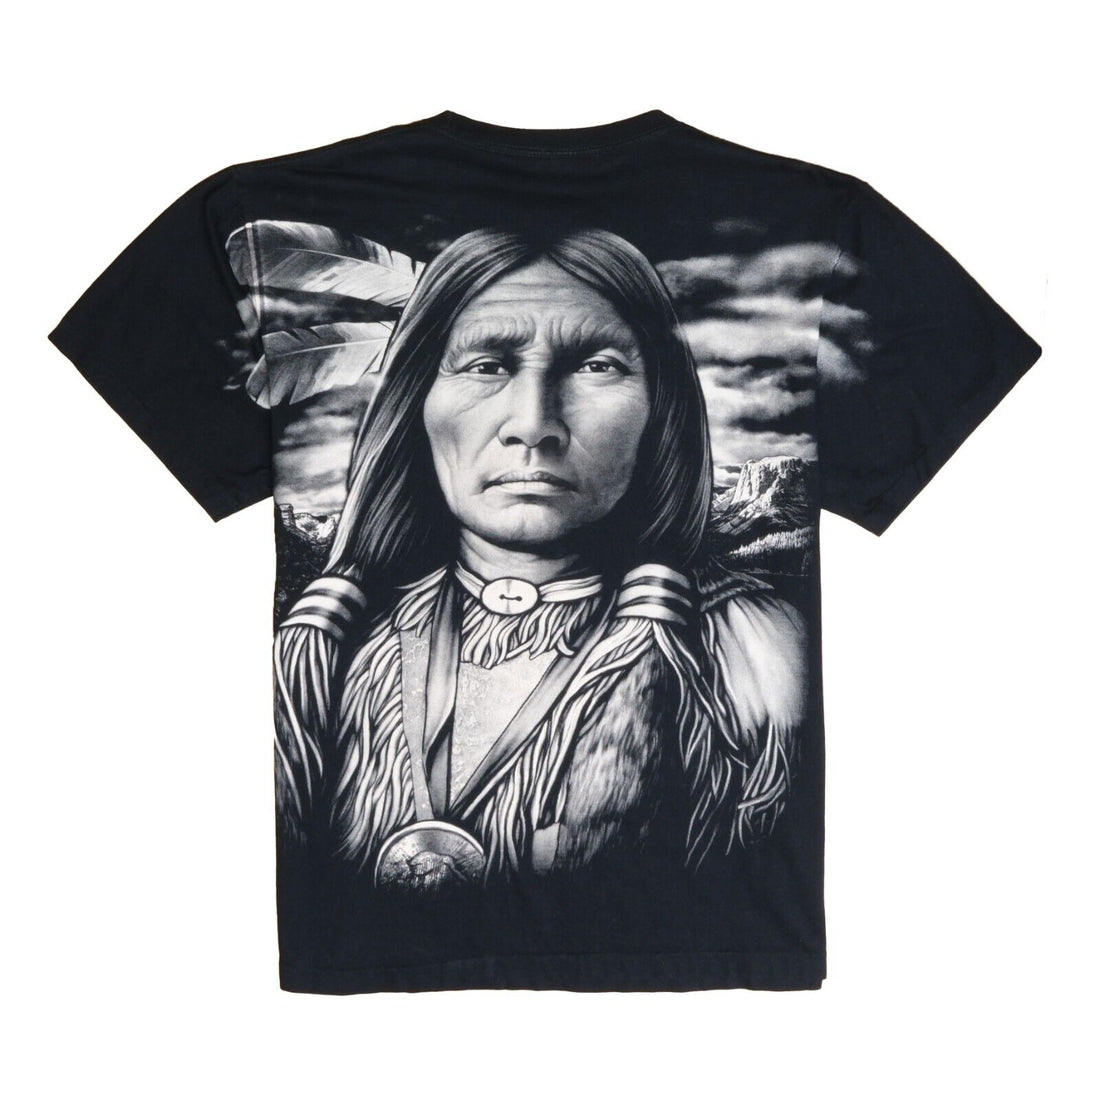 Vintage Native Portrait T-Shirt Size XL Black All Over Print